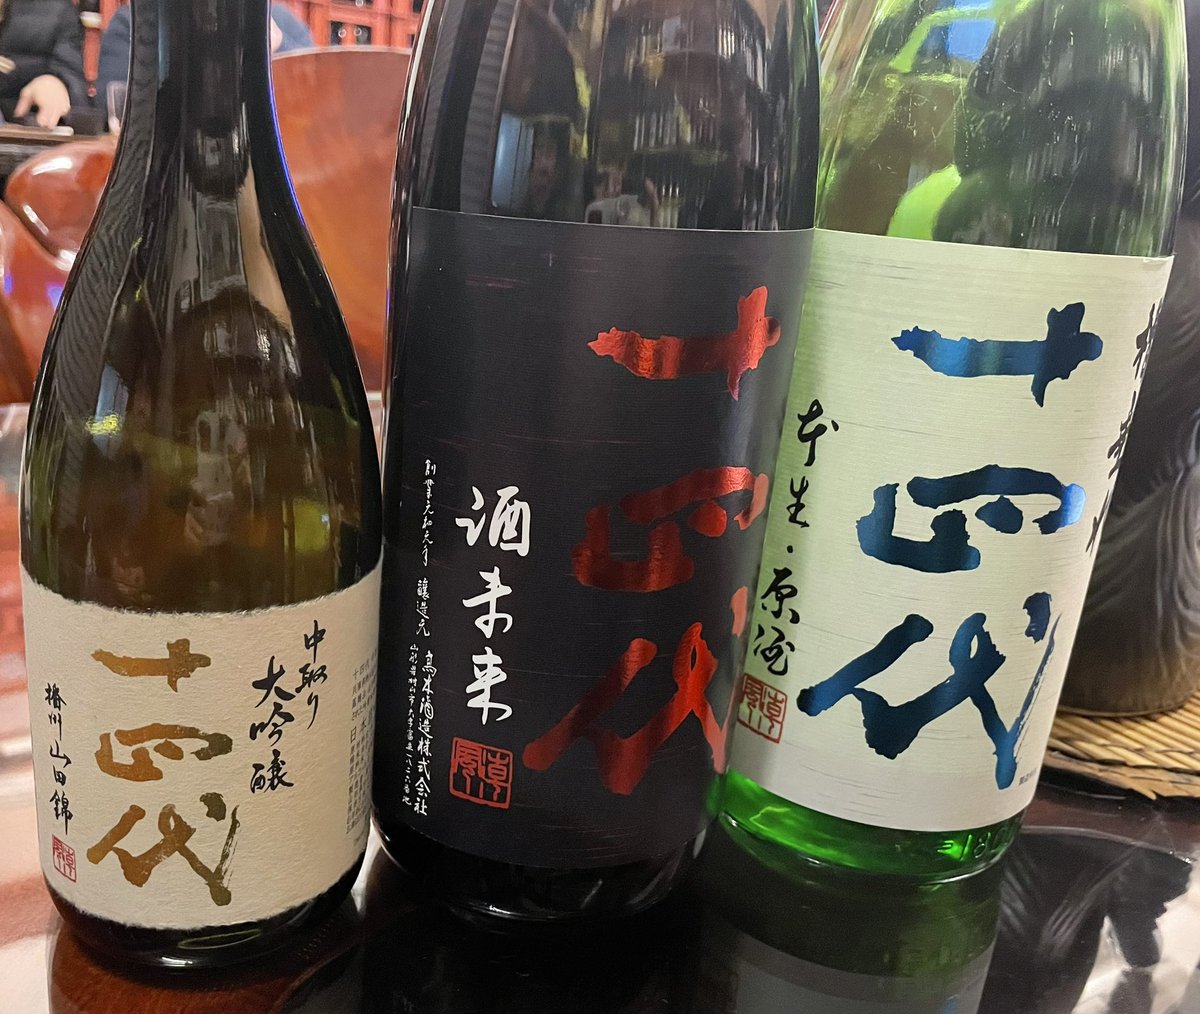 test ツイッターメディア - 昨日いただいた日本酒たち
お初の亀齢は今長野で一番人気だそうで、美味しかった♡ https://t.co/uM2MaTguUL